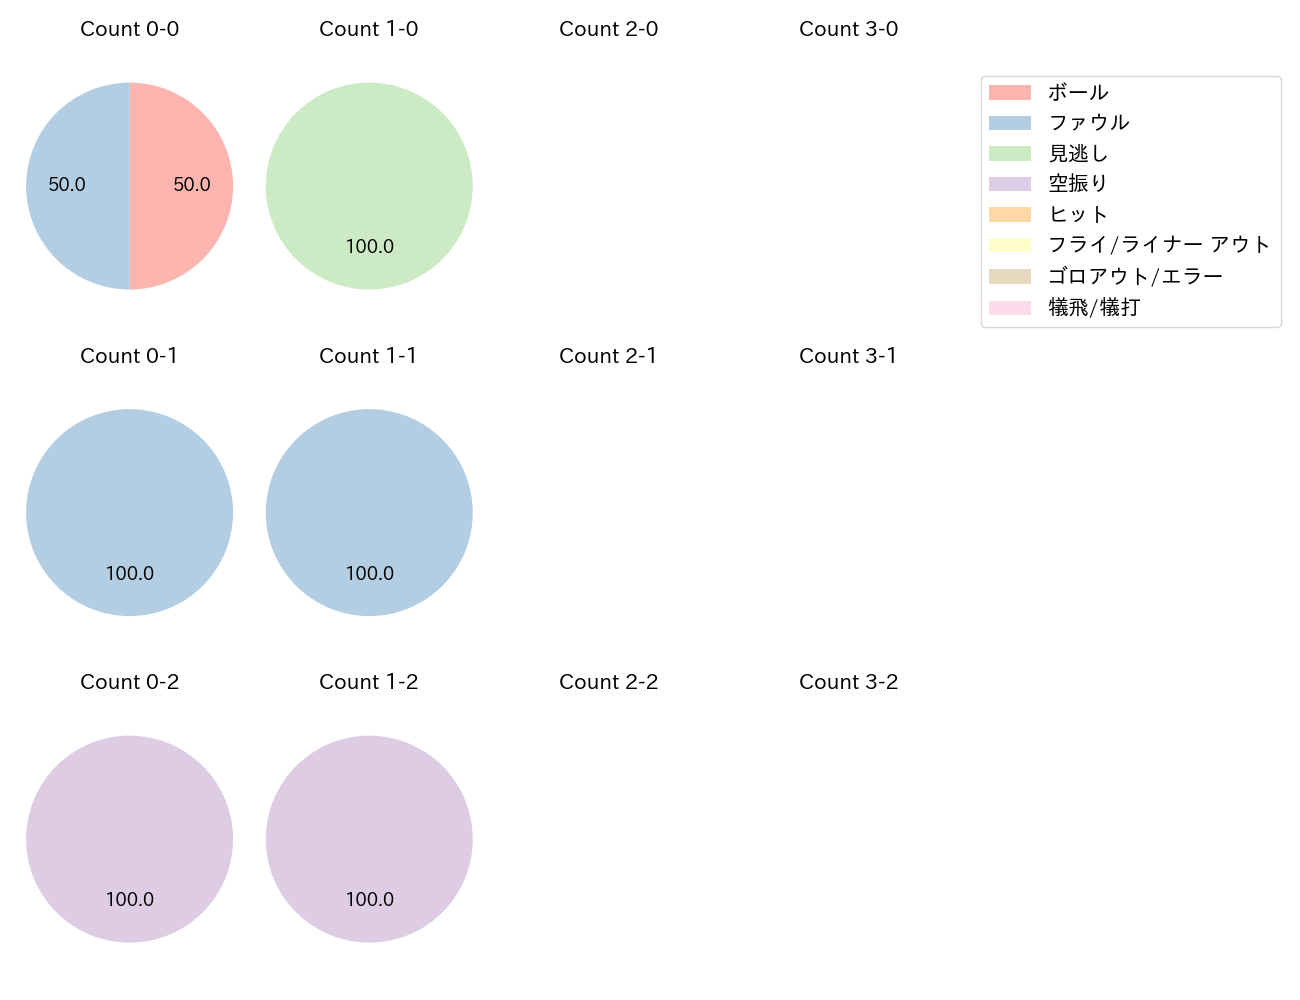 西田 明央の球数分布(2021年5月)